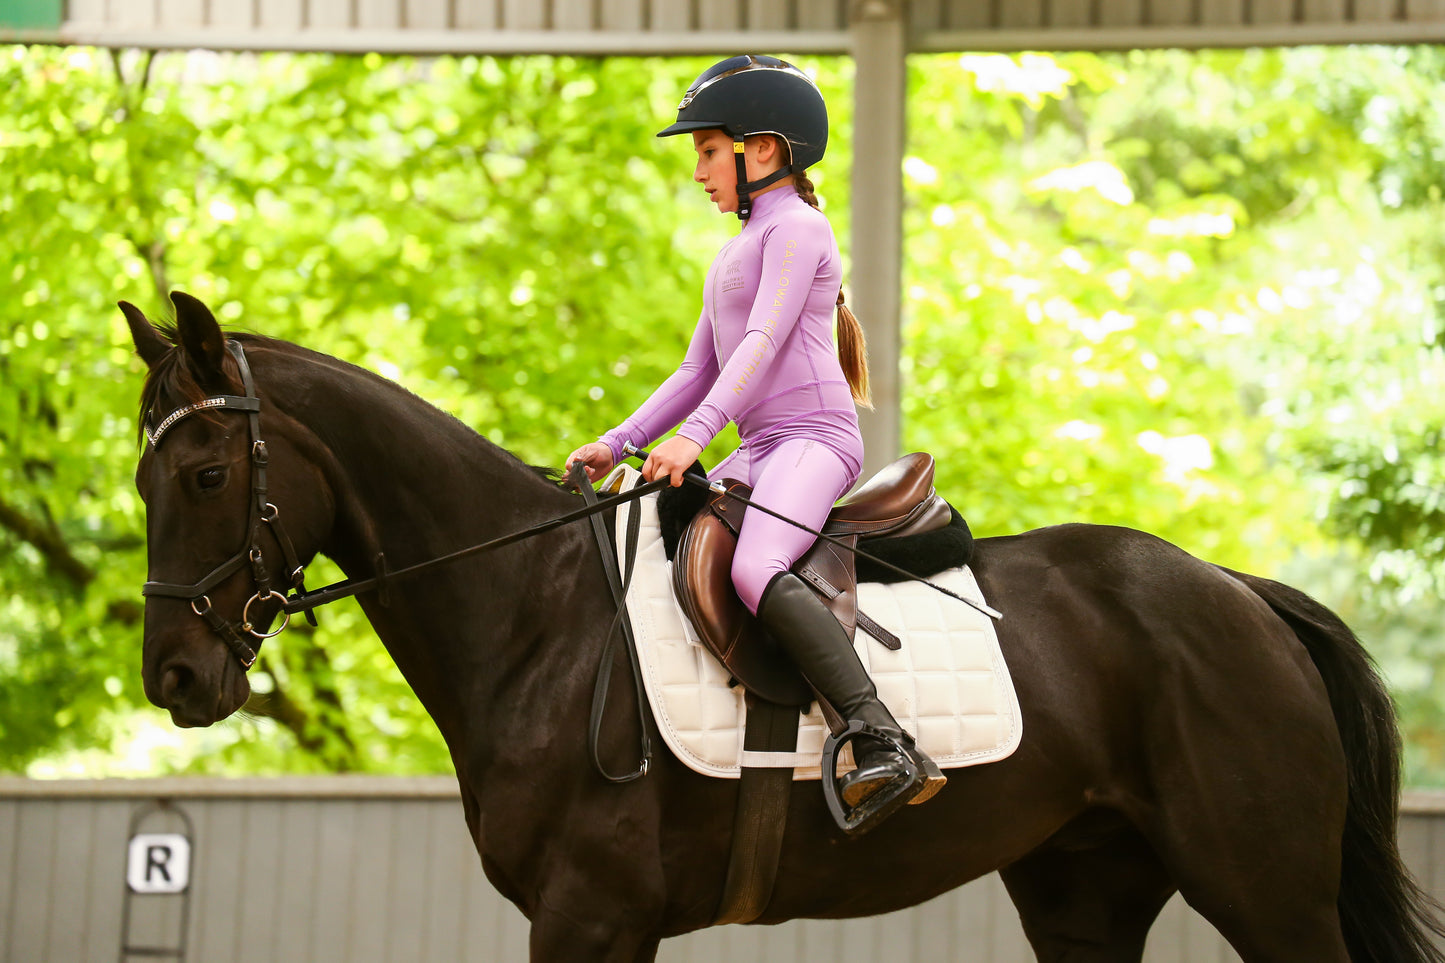 LOLLIPOP light weight summer long sleeve Galloway Equestrian Performance riding suit